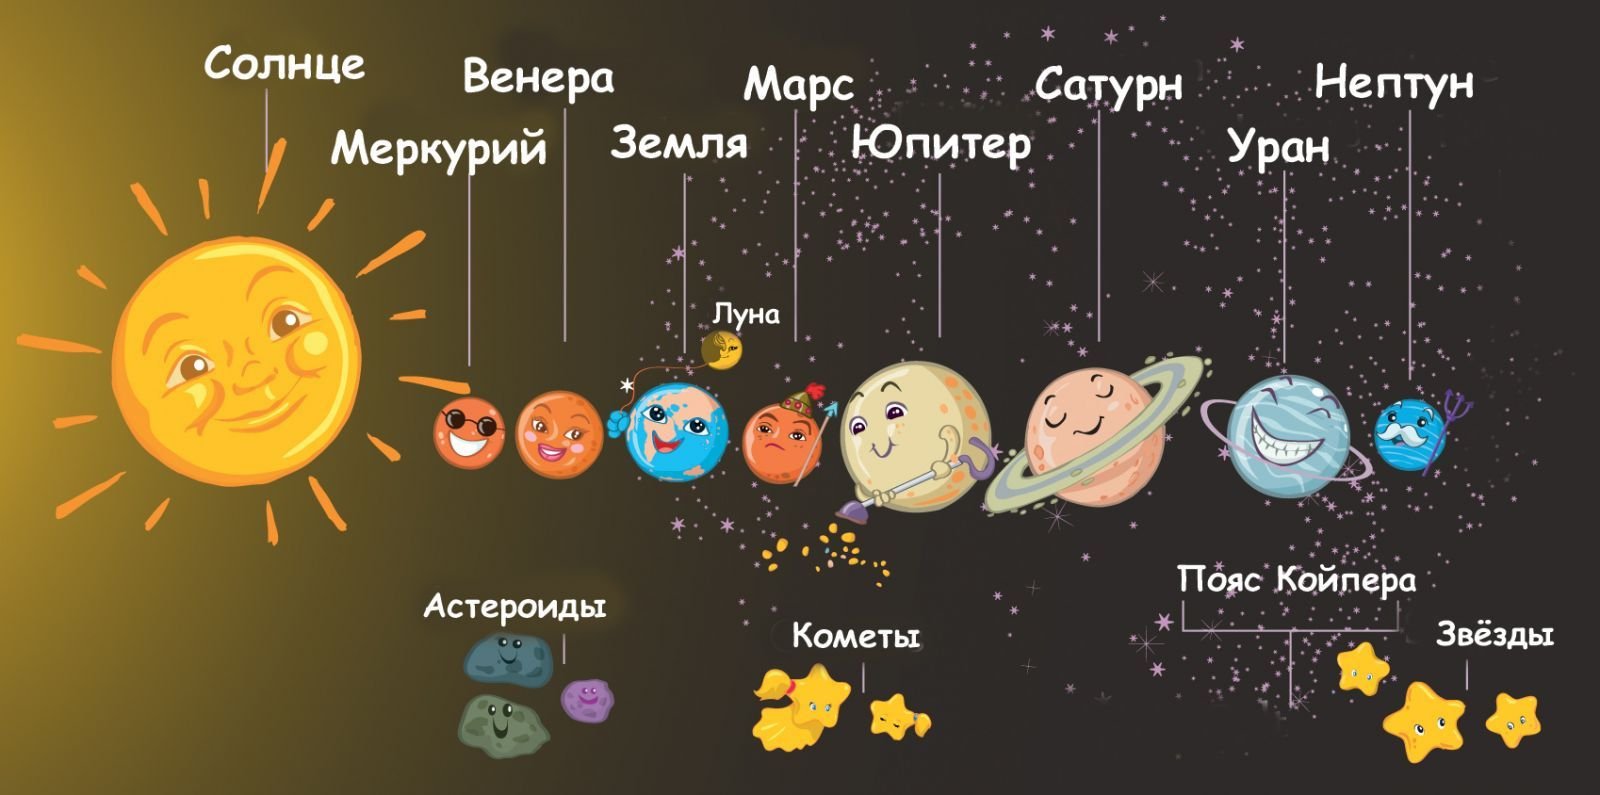 Планеты солнечной системы по порядку от солнца с названиями с луной